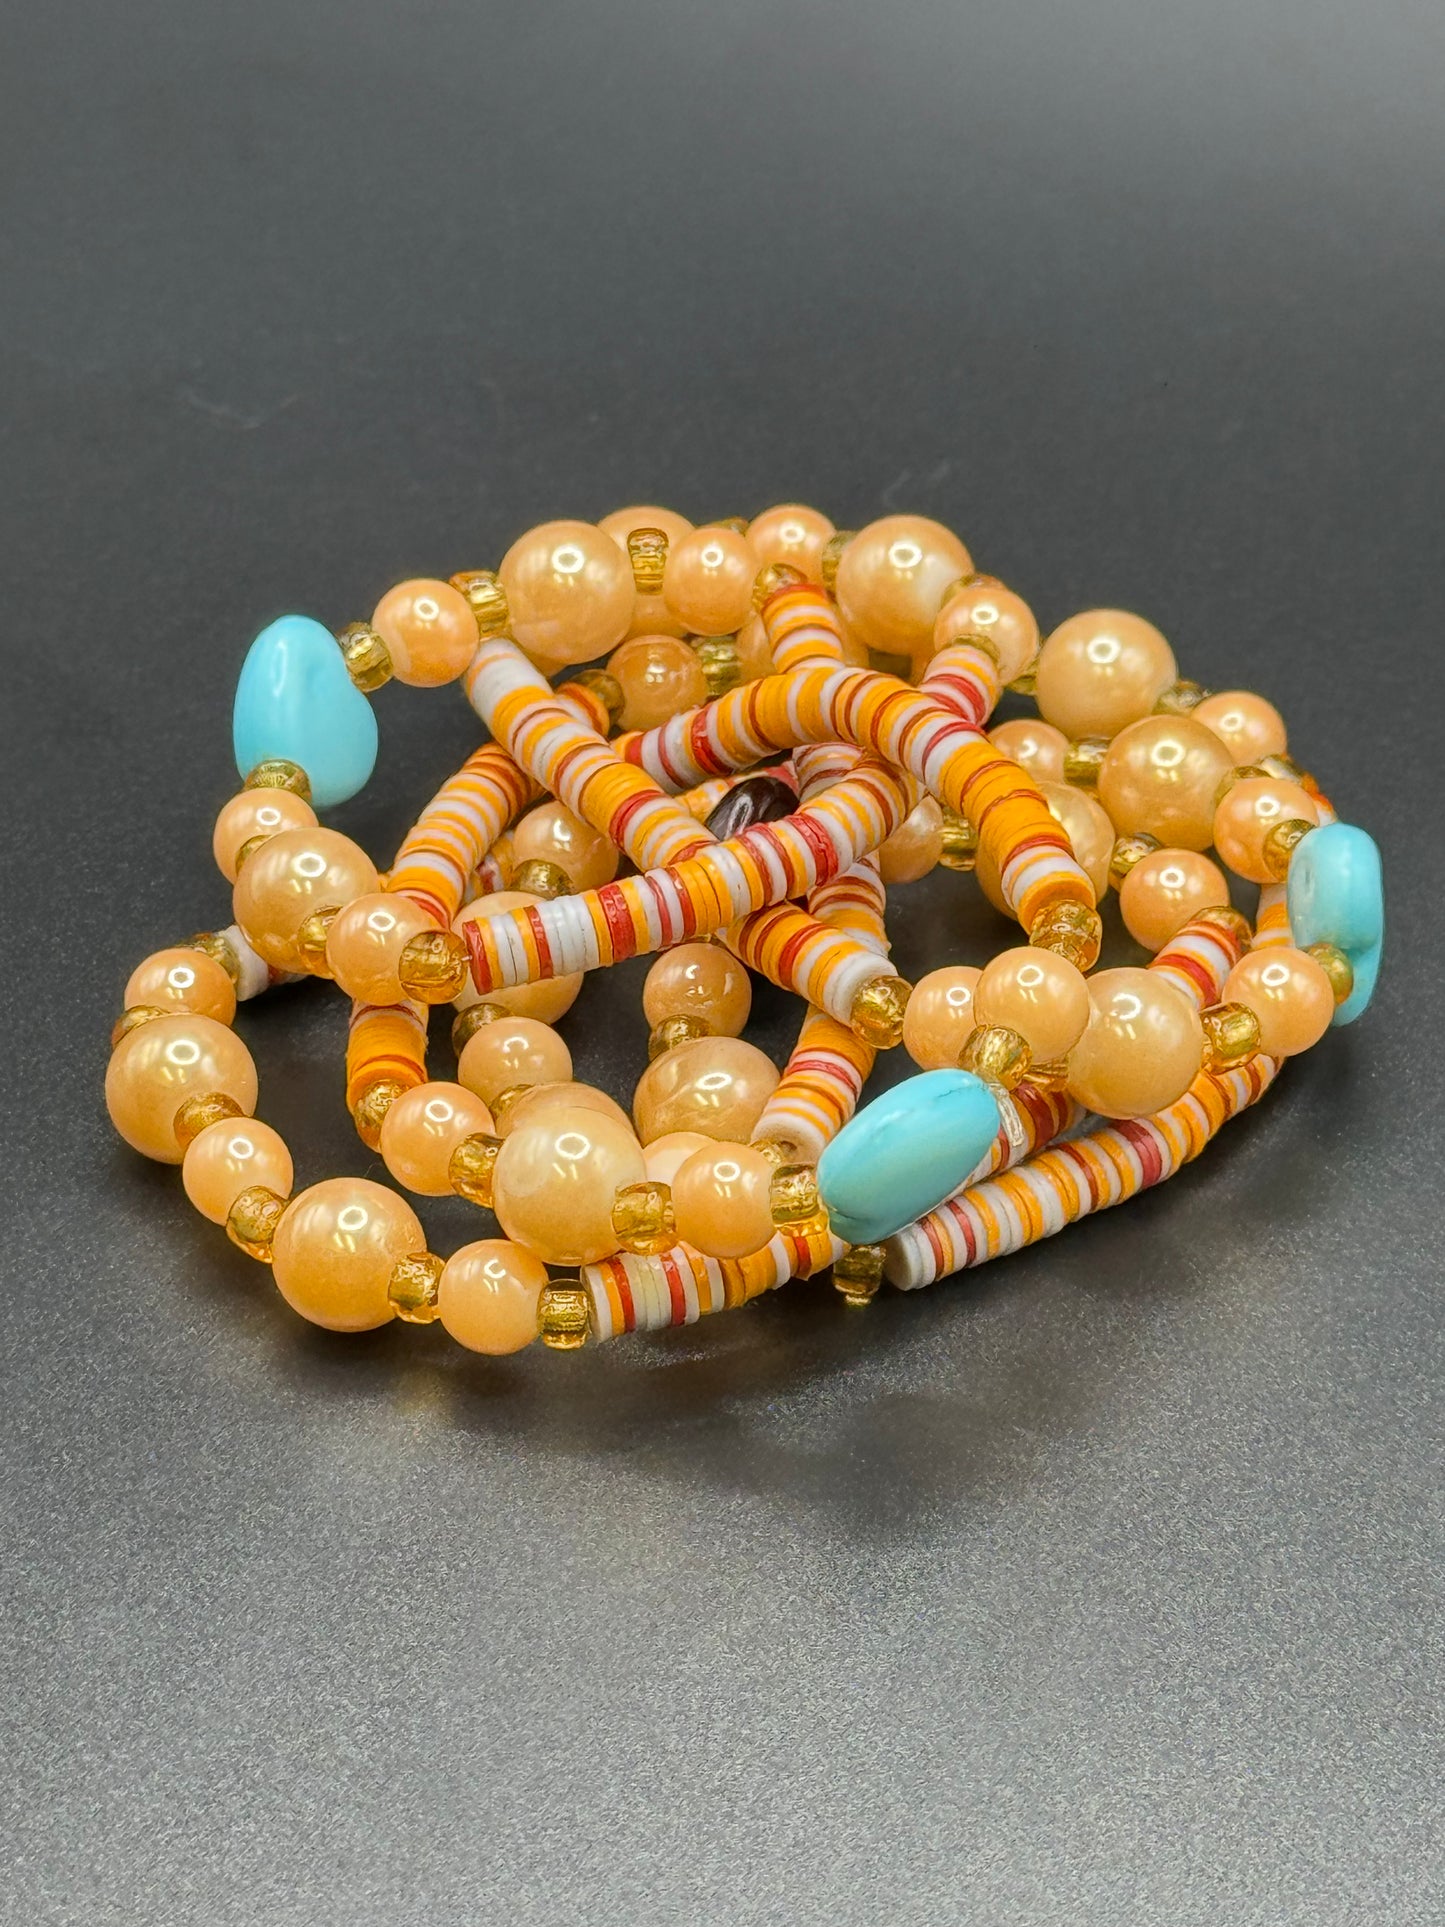 $5 Handmade Waist Beads